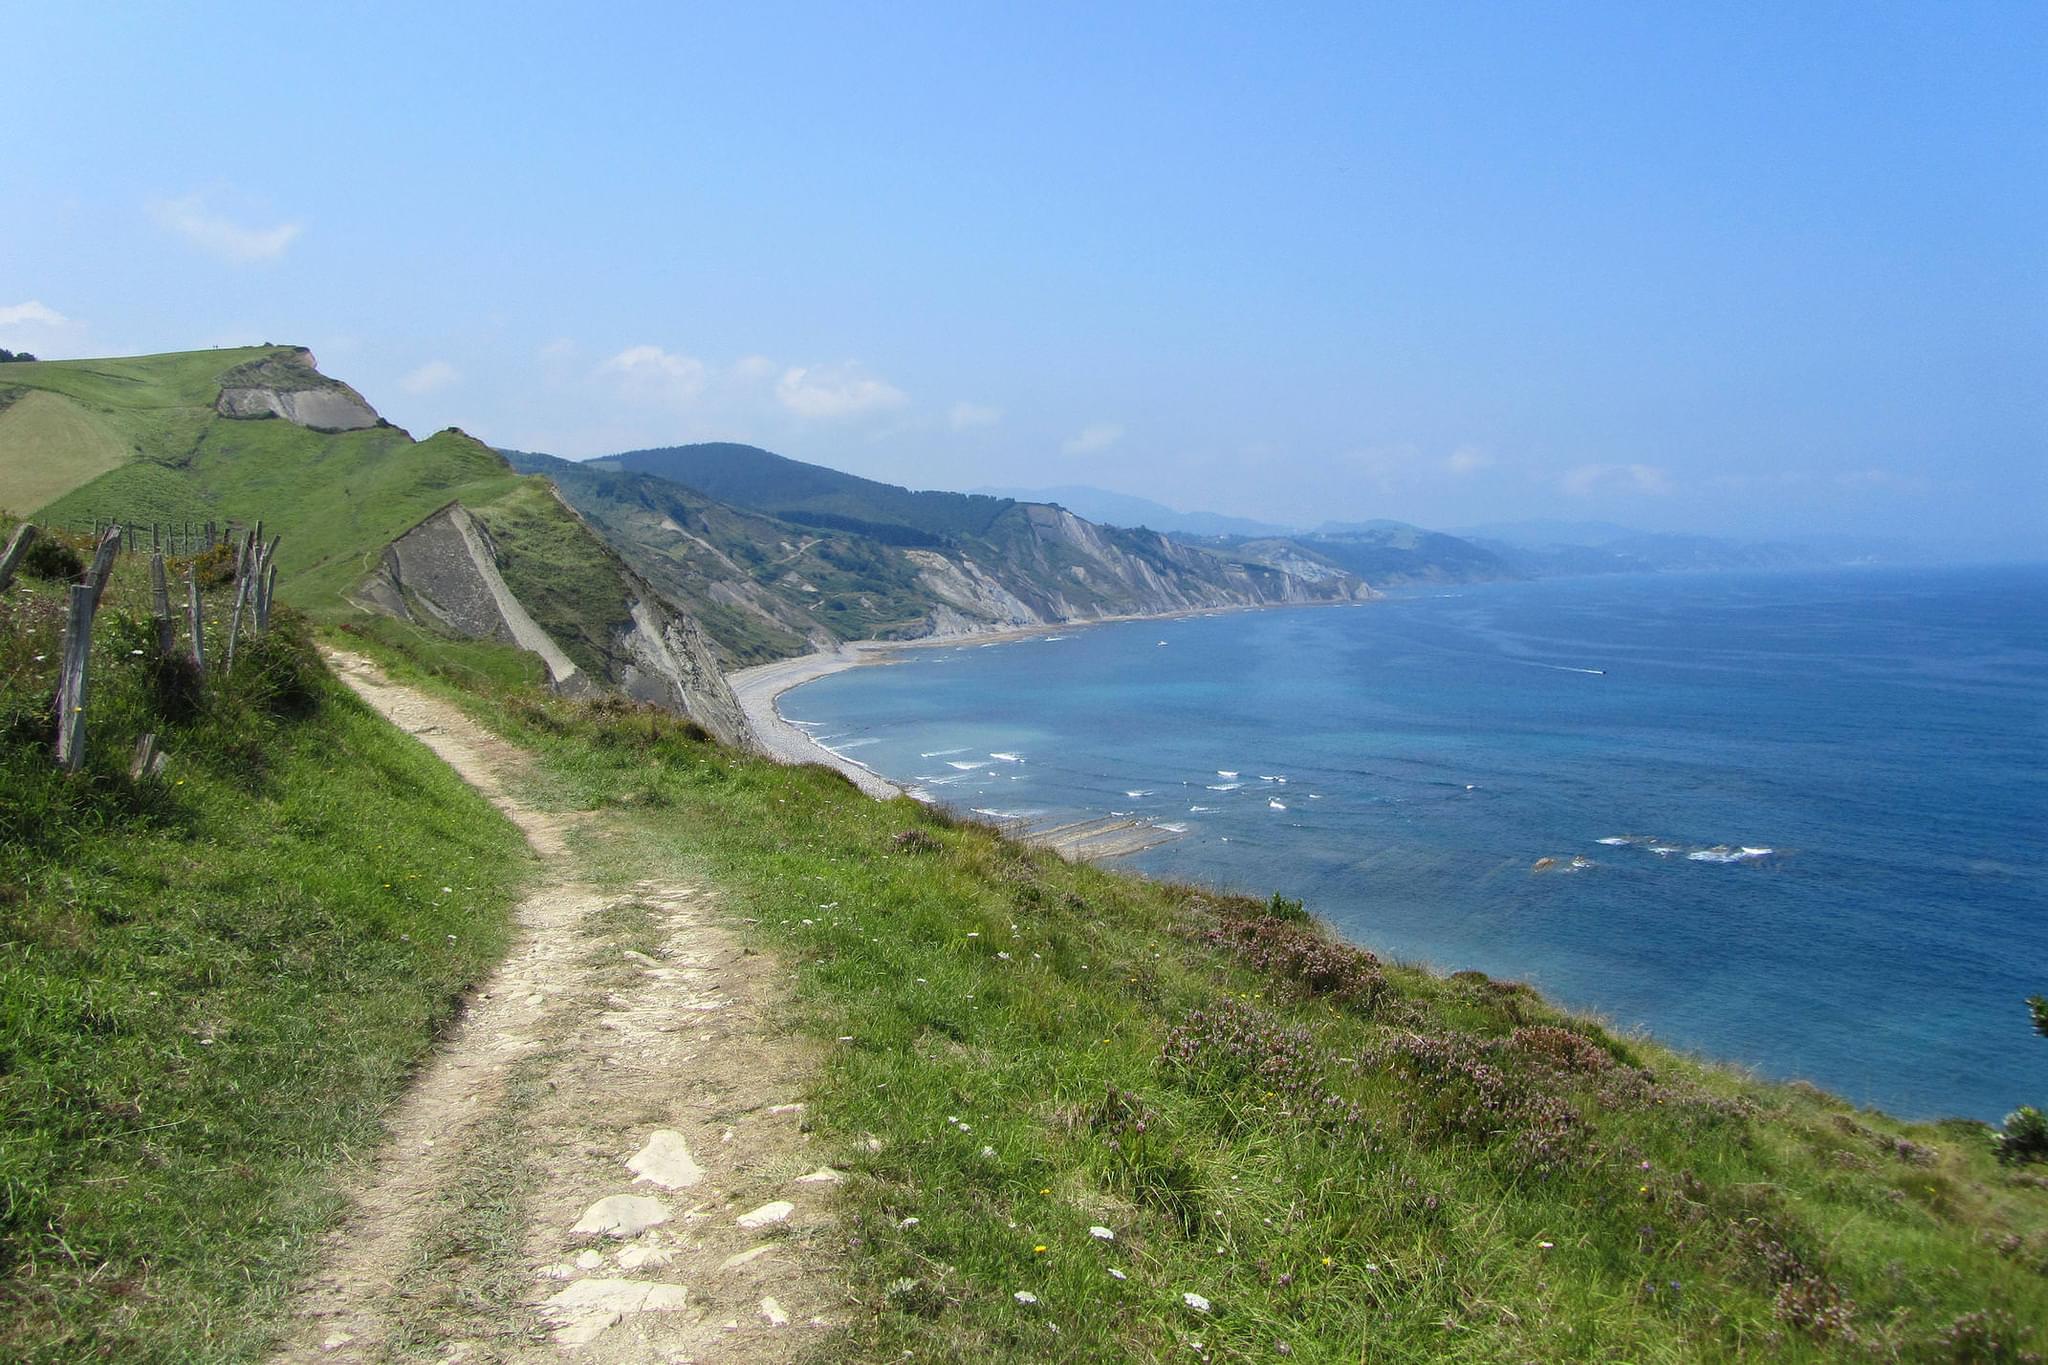 Spain basque inn to inn camino del norte zumaia cliffs trail